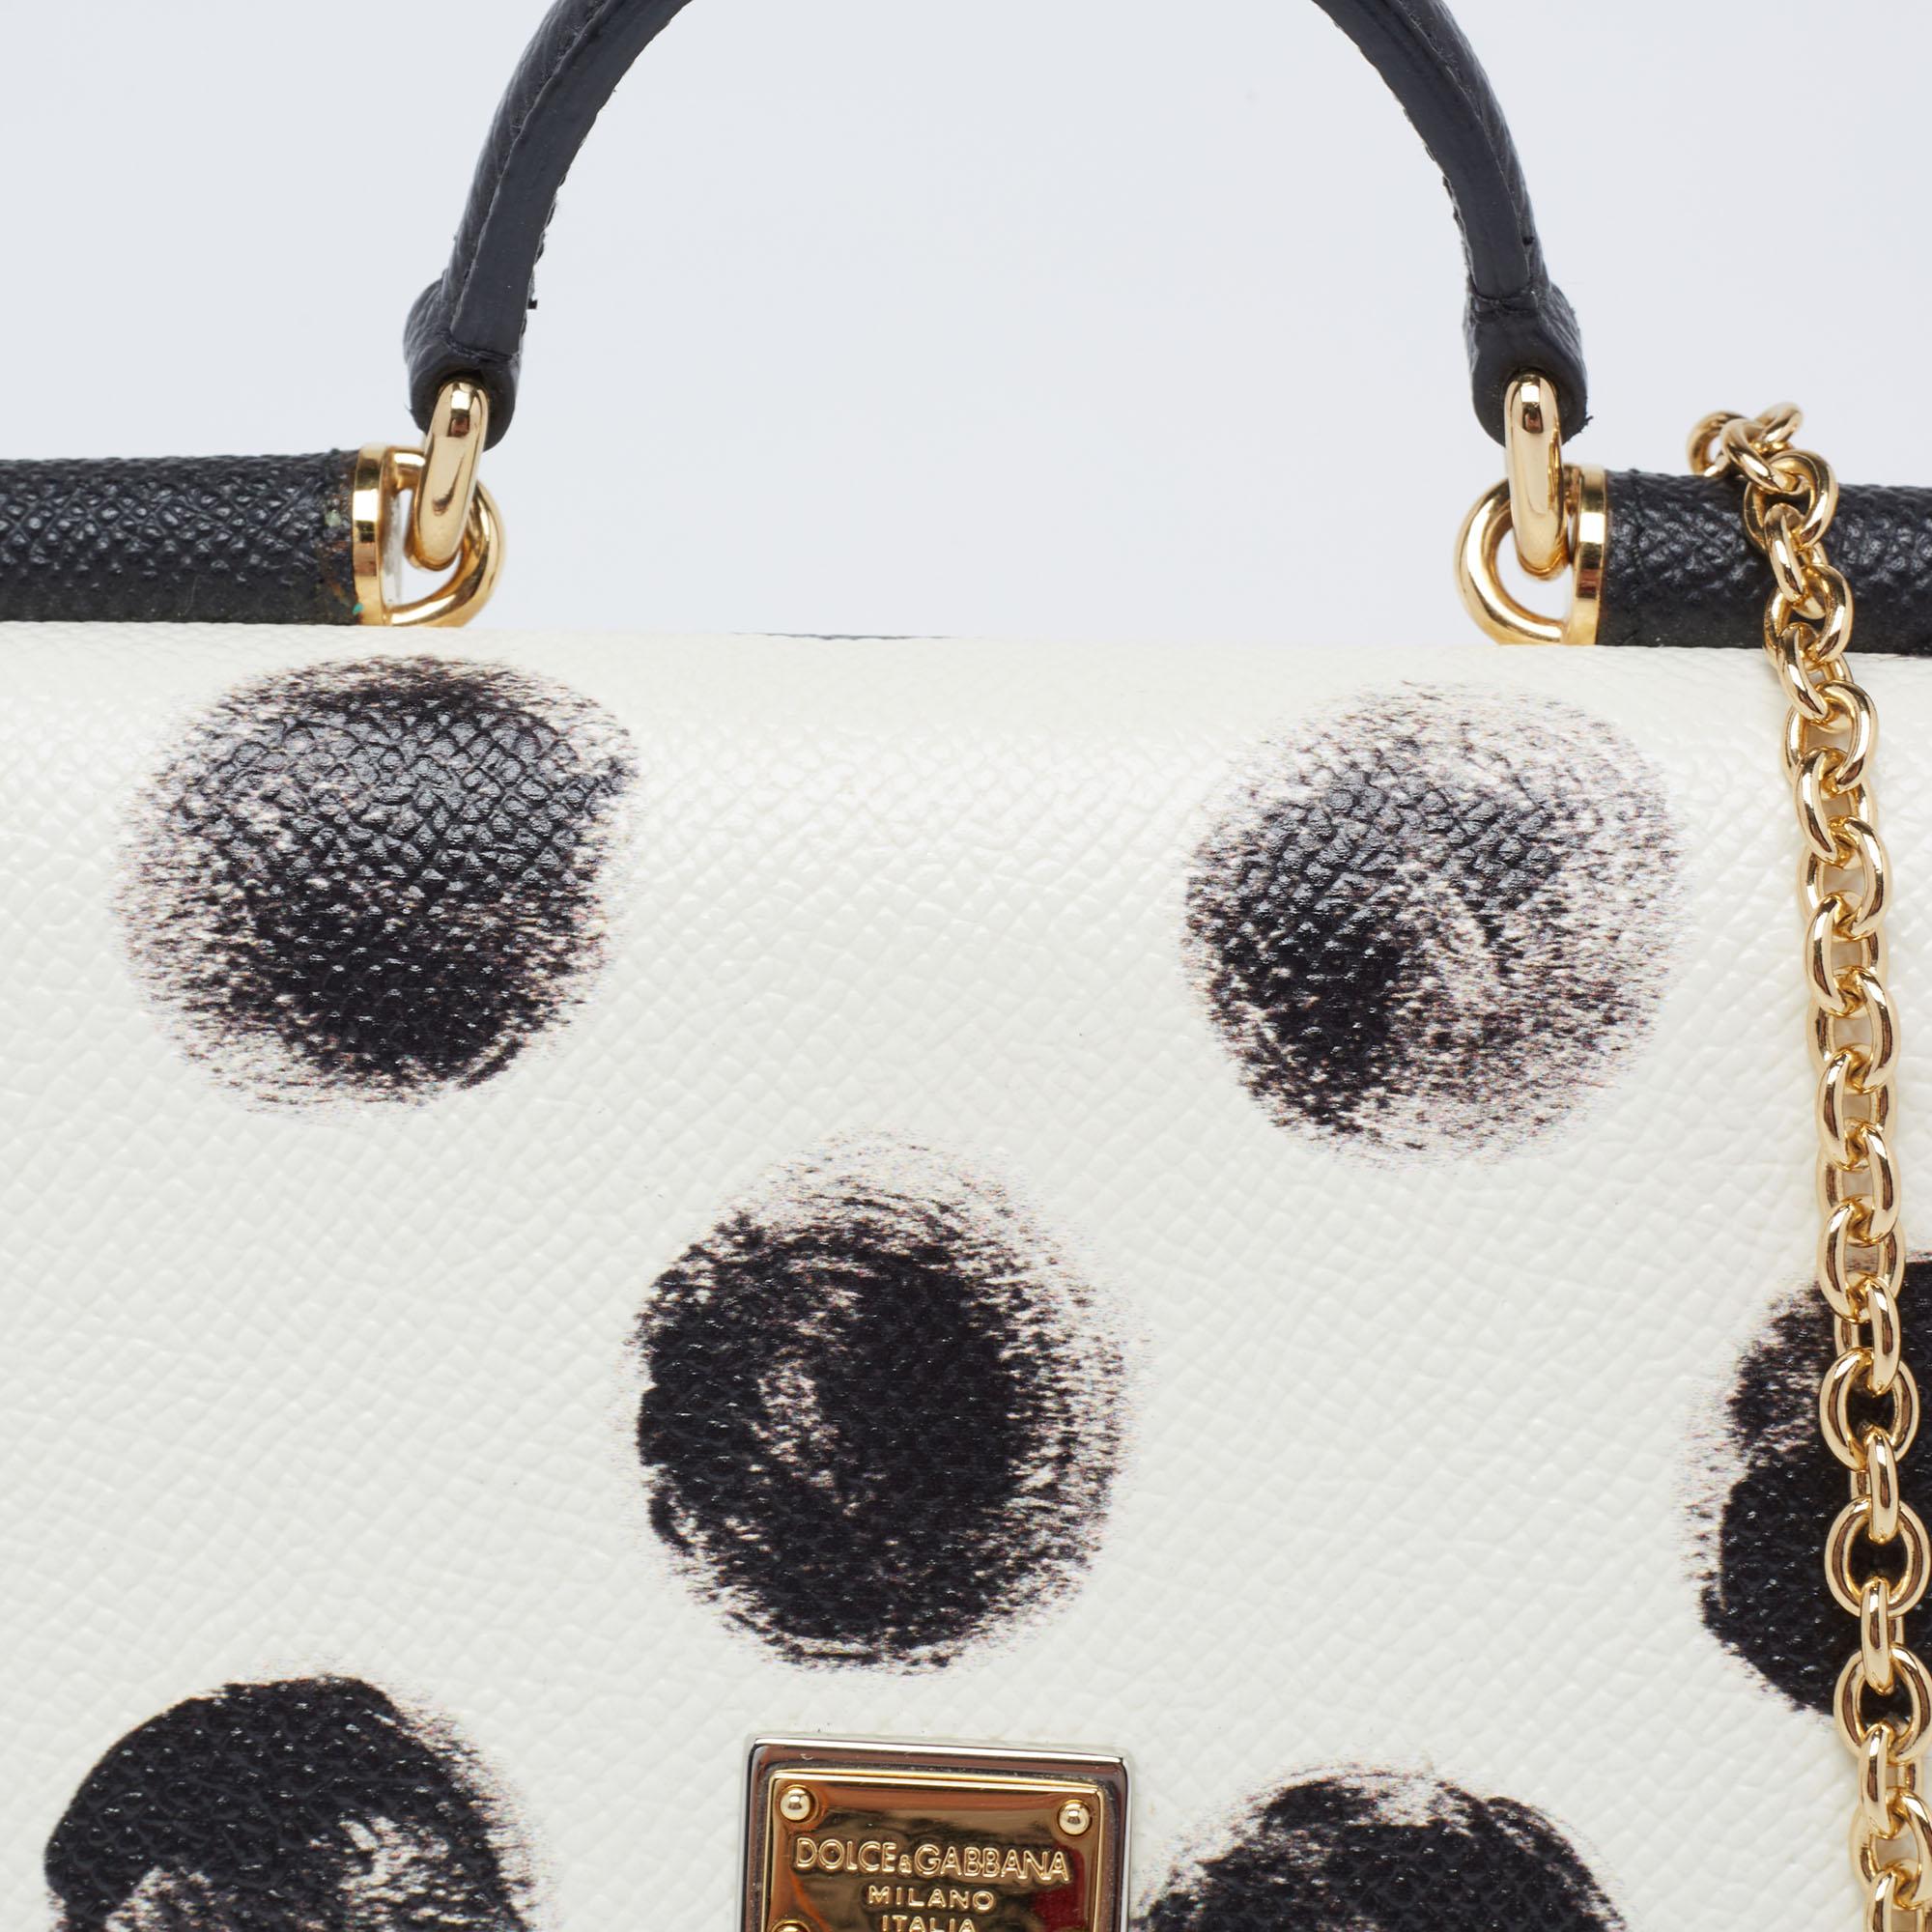 Dolce & Gabbana White/Black Polka Dot Leather Miss Sicily Von Wallet on Chain 5